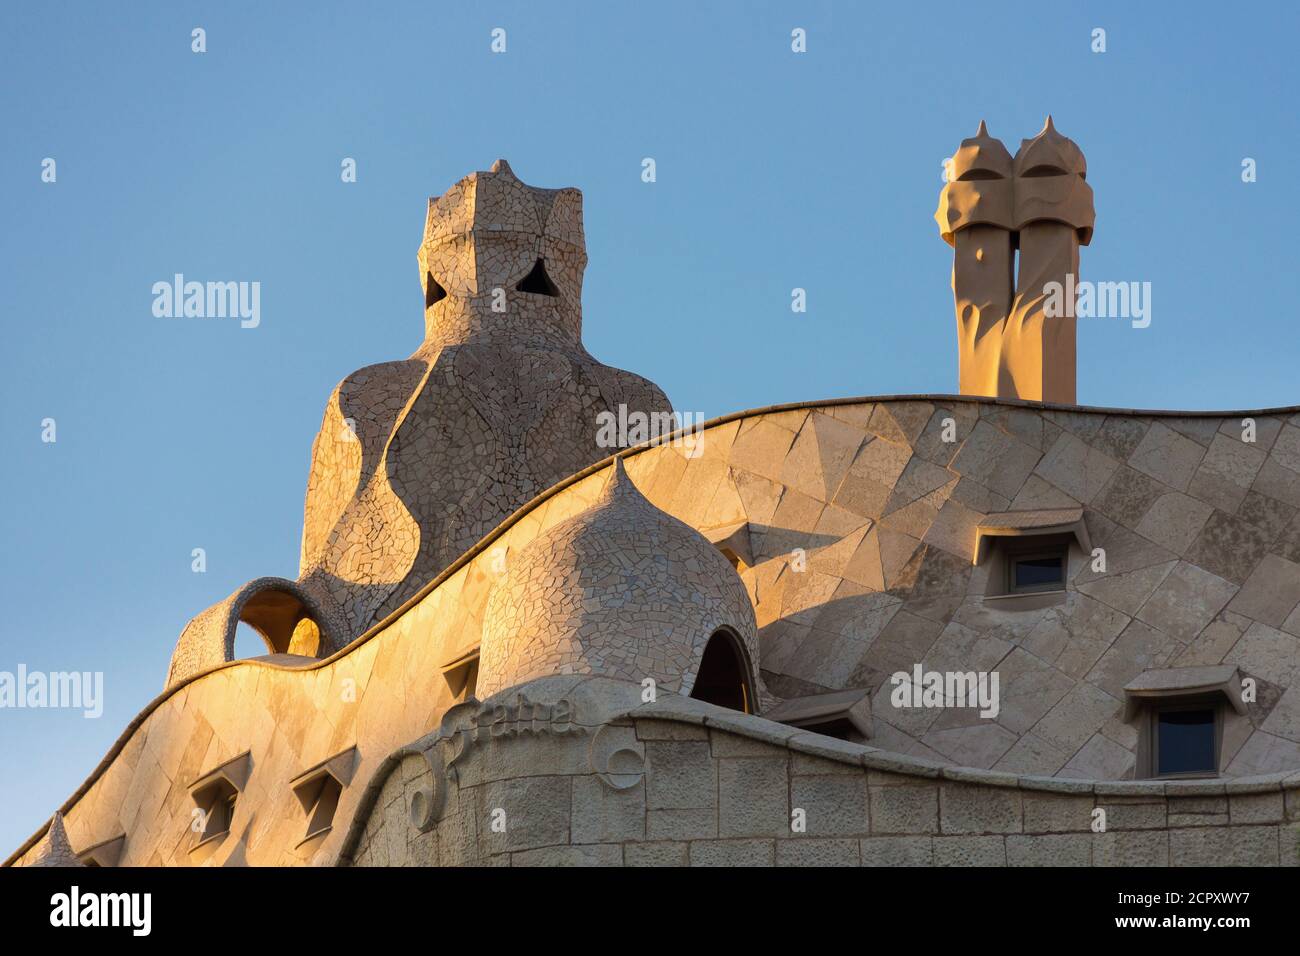 Barcelone, Casa Milá, la Pedrera, Antoni Gaudi, monument architectural, construction de toit avec puits de ventilation Banque D'Images